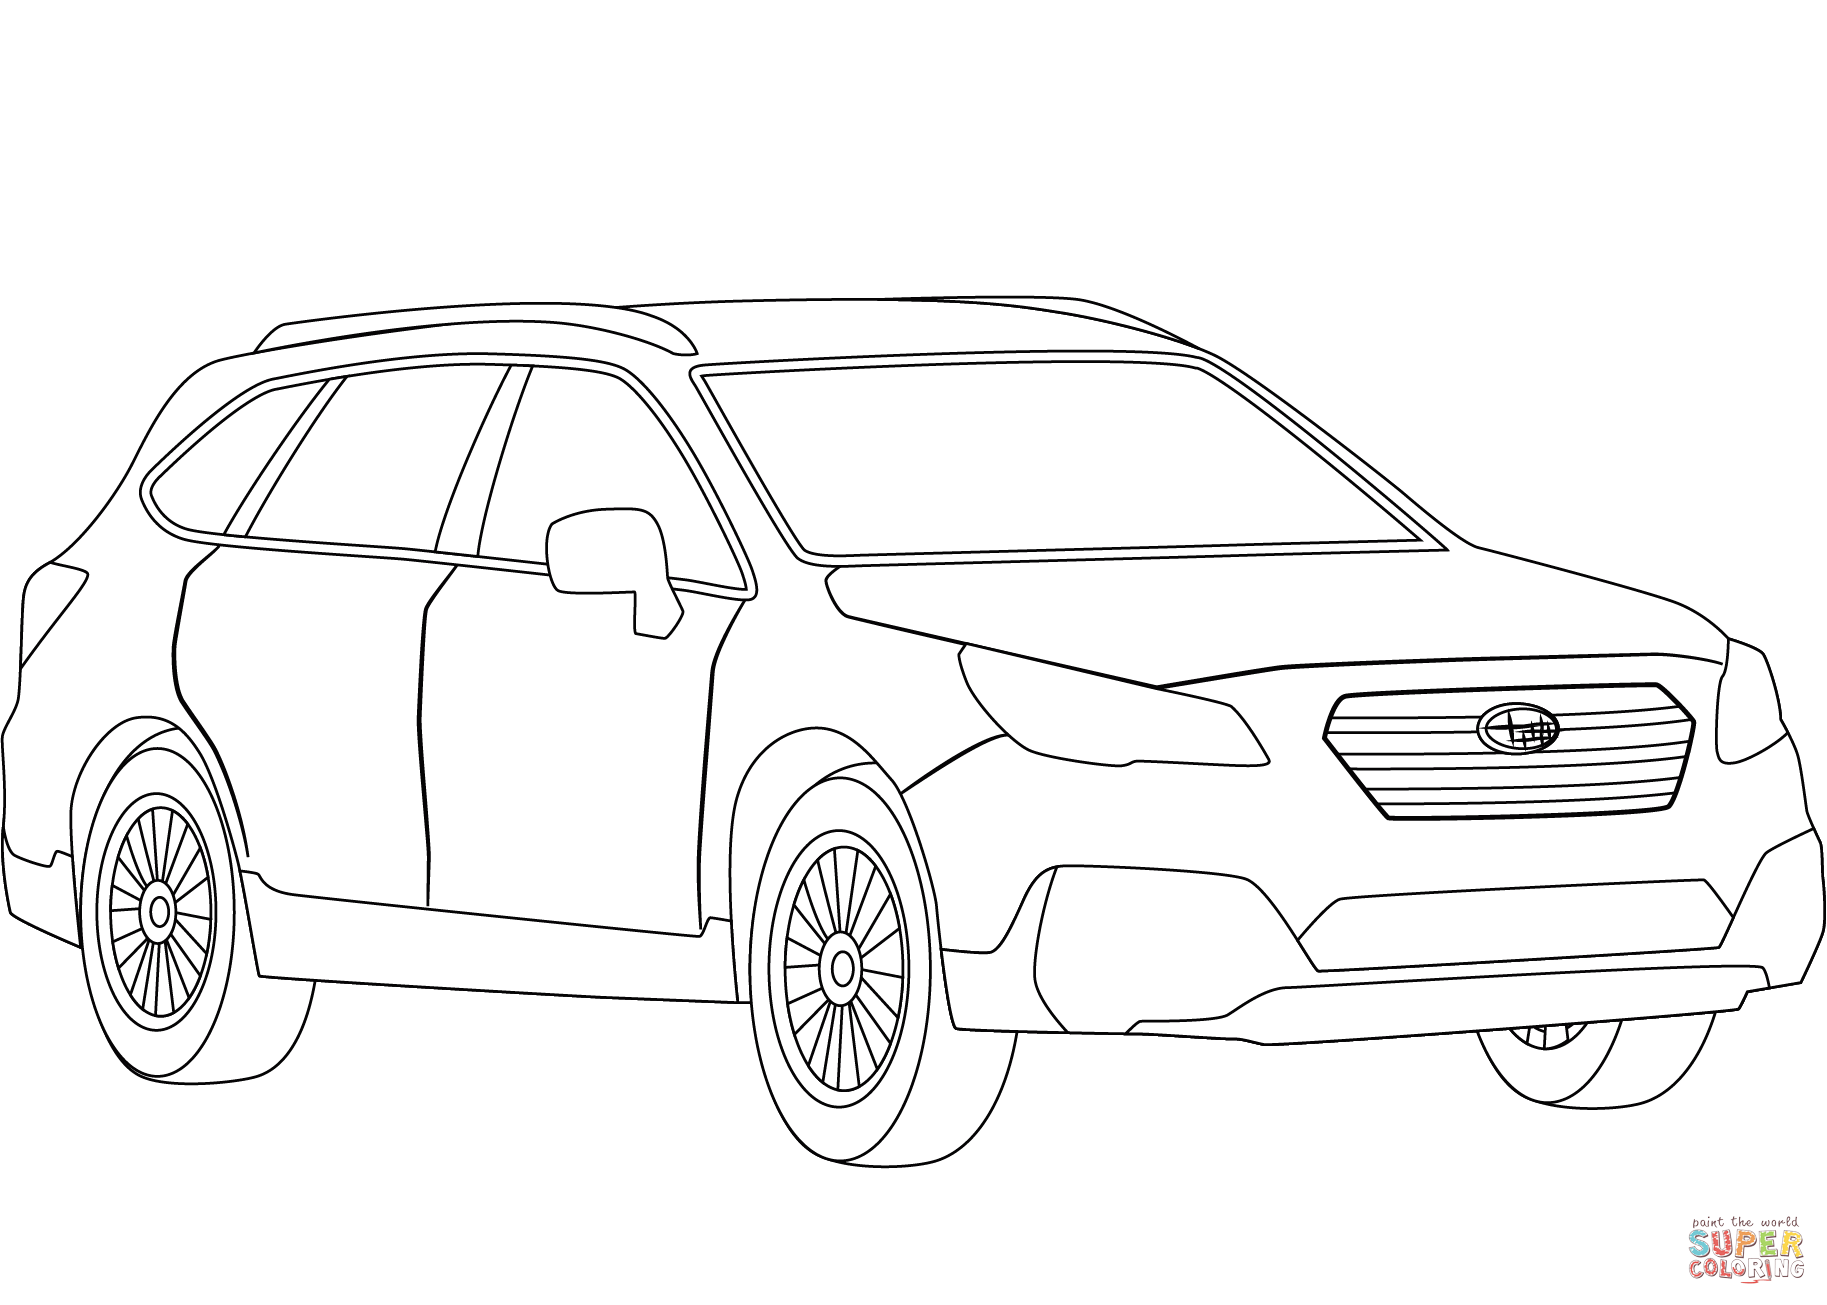 Subaru Rally Car Coloring Page